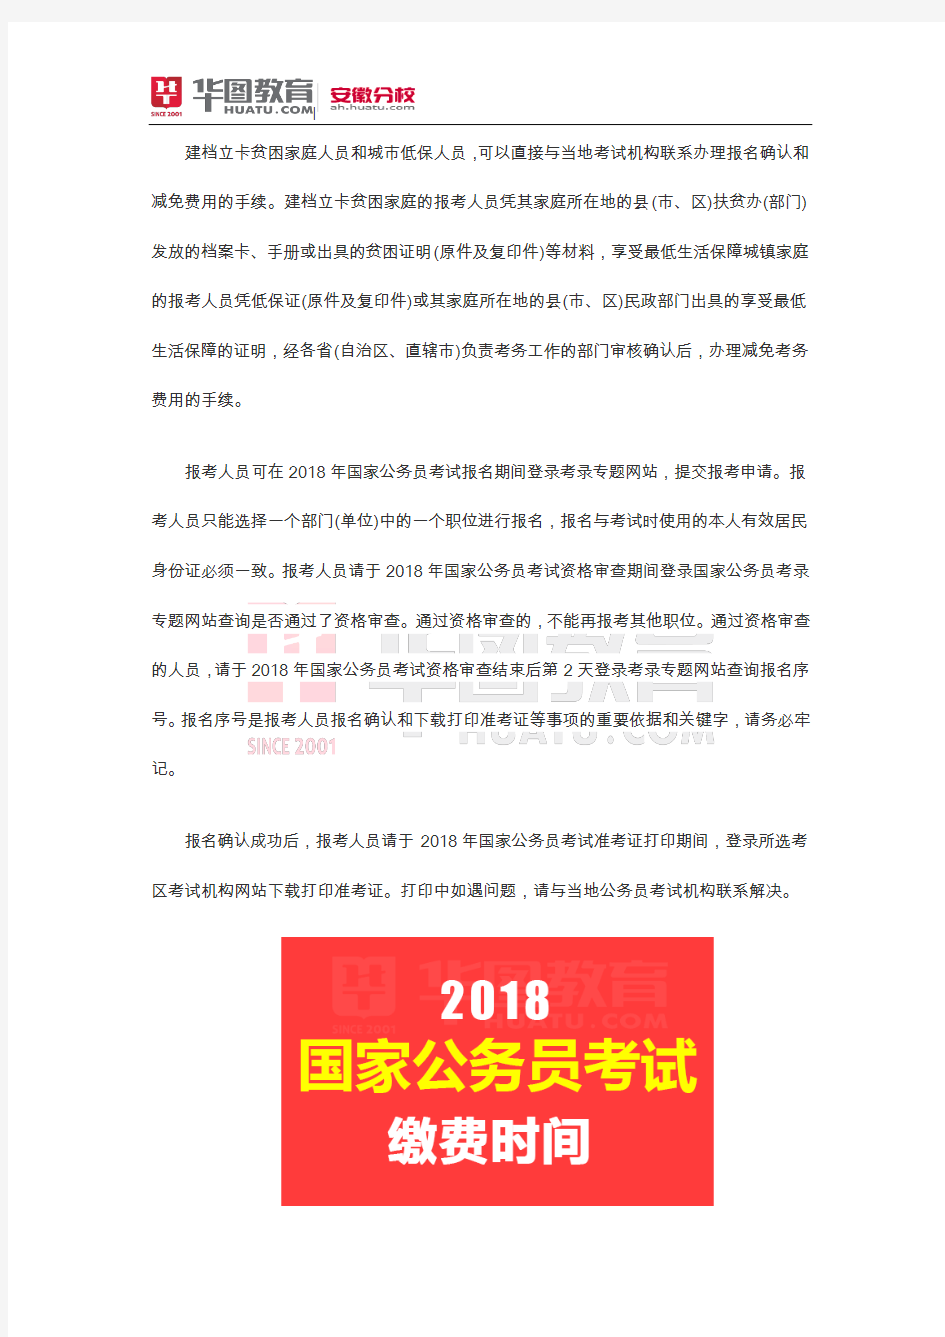 2018年滁州国家公务员考试缴费时间